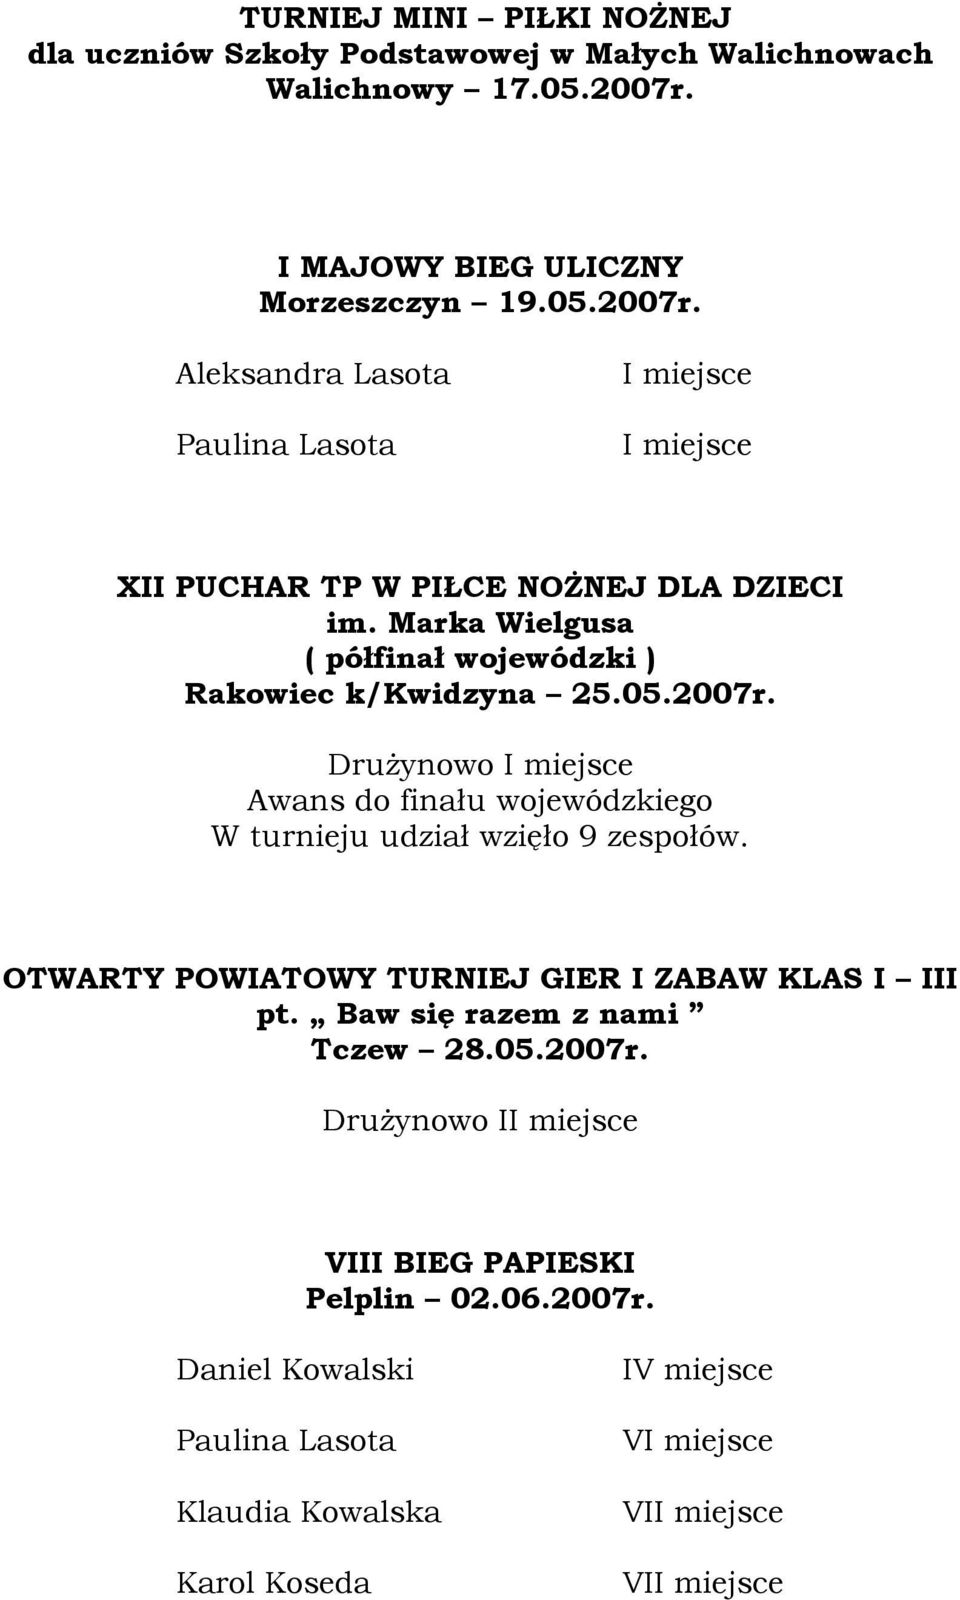 Marka Wielgusa ( półfinał wojewódzki ) Rakowiec k/kwidzyna 25.05.2007r. Awans do finału wojewódzkiego W turnieju udział wzięło 9 zespołów.